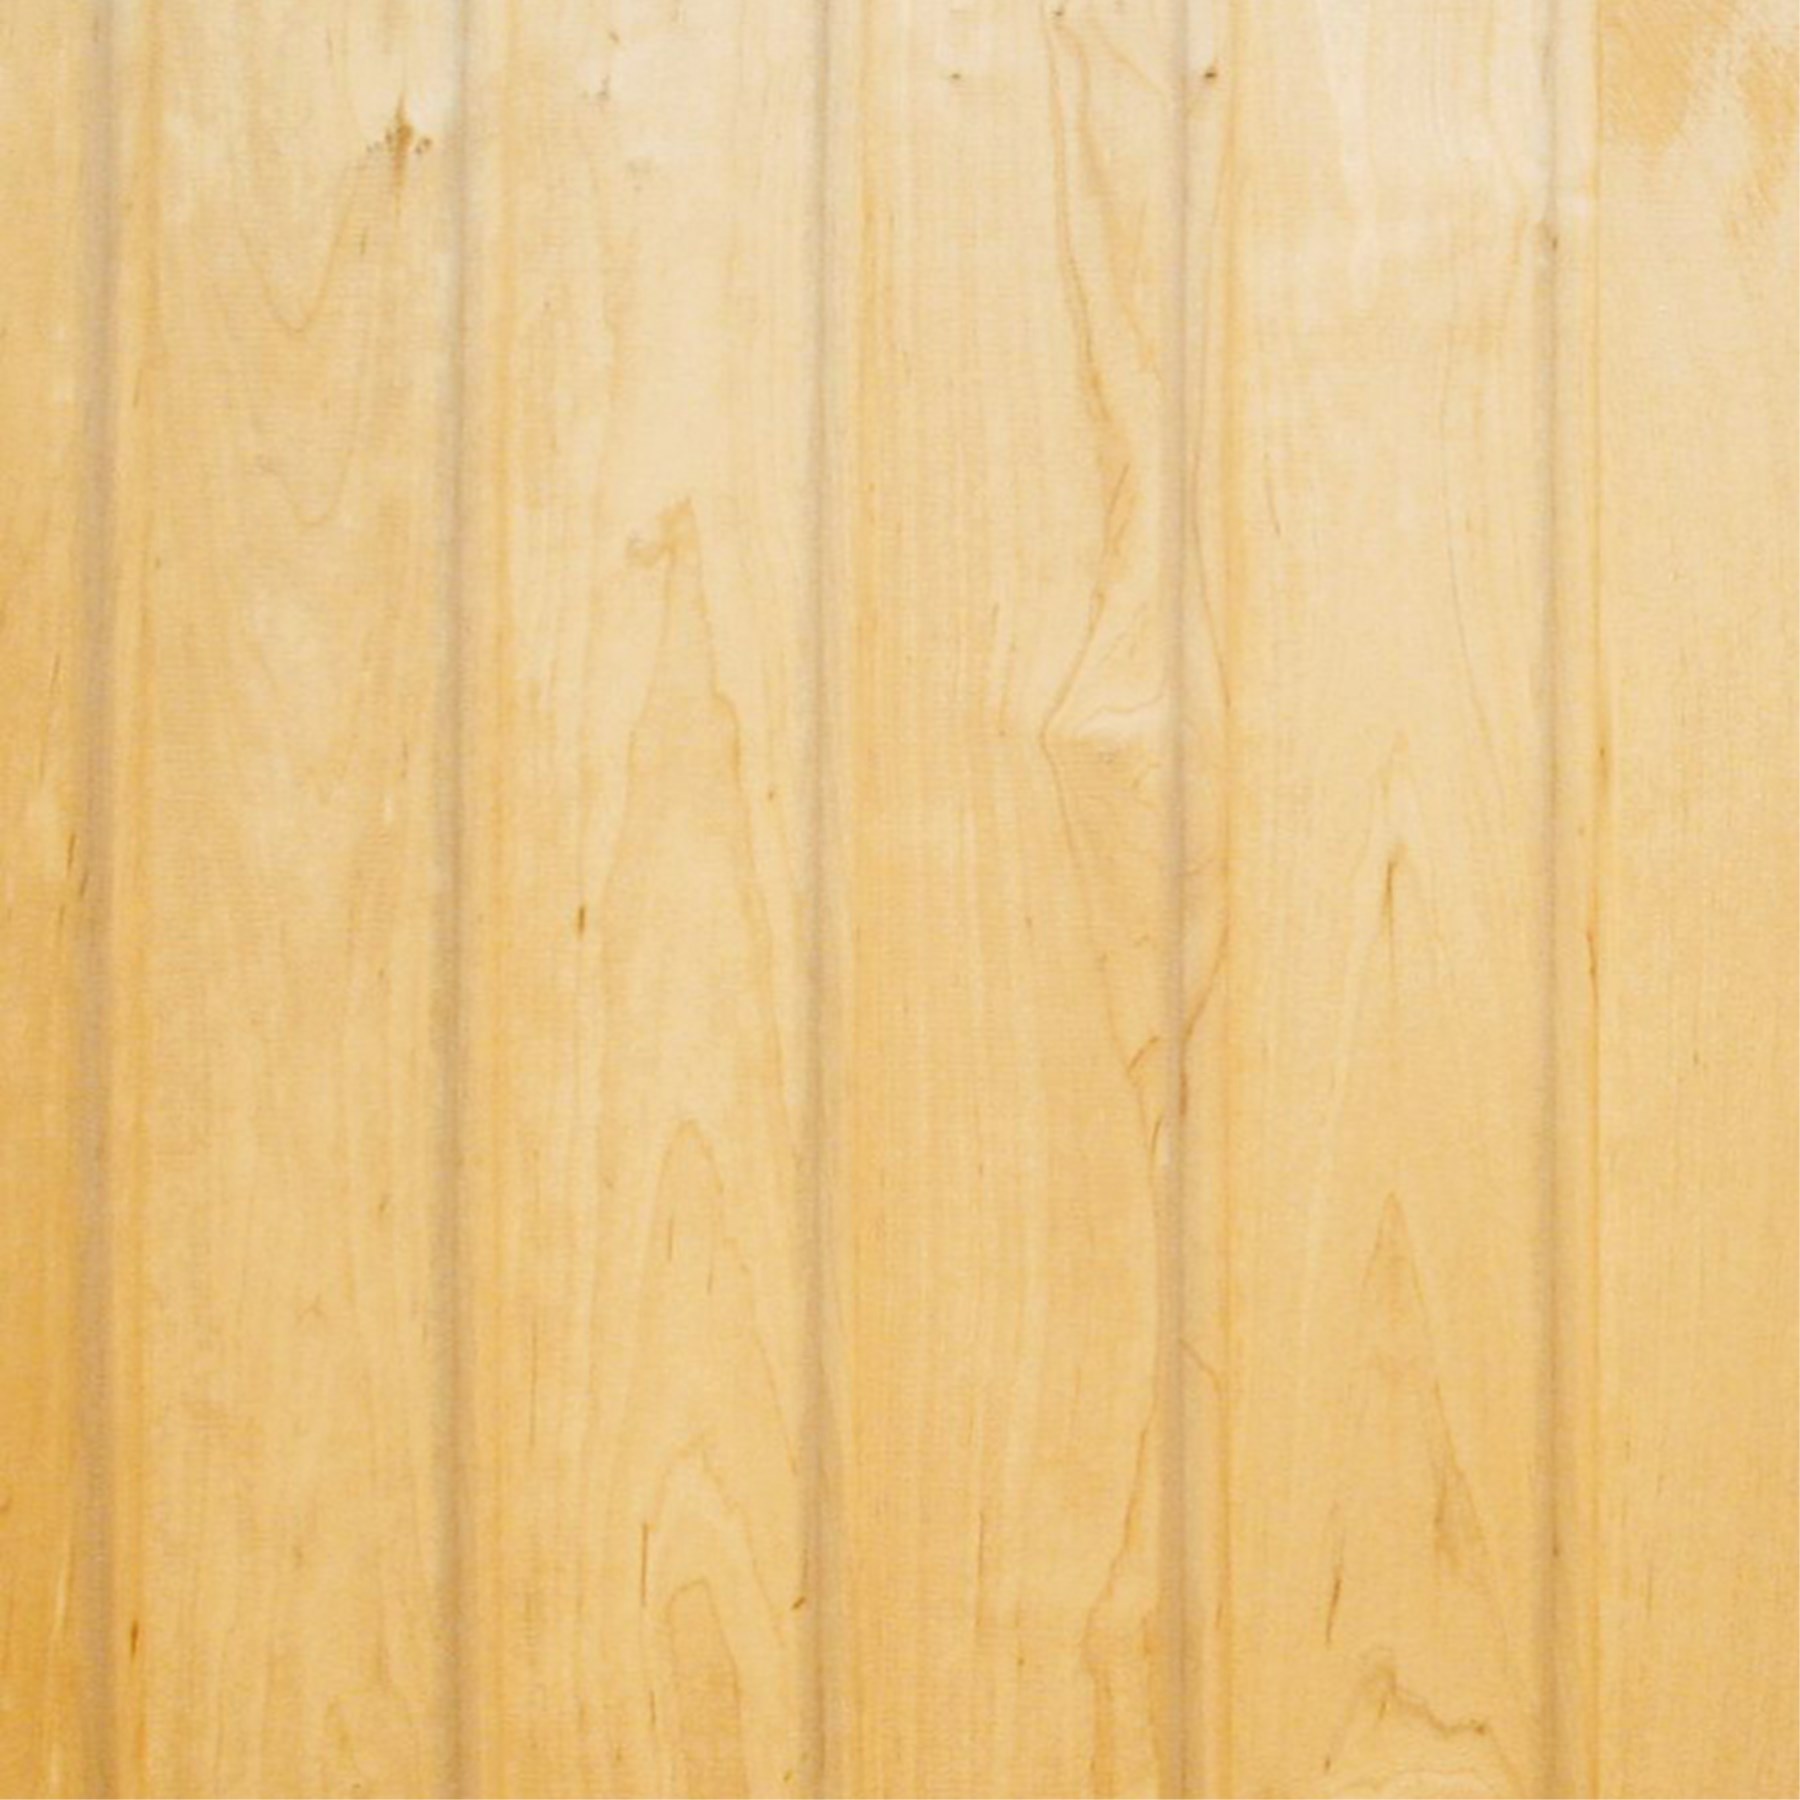 1277018 - Sauna-Profilbrett Kiefer 15x95mm